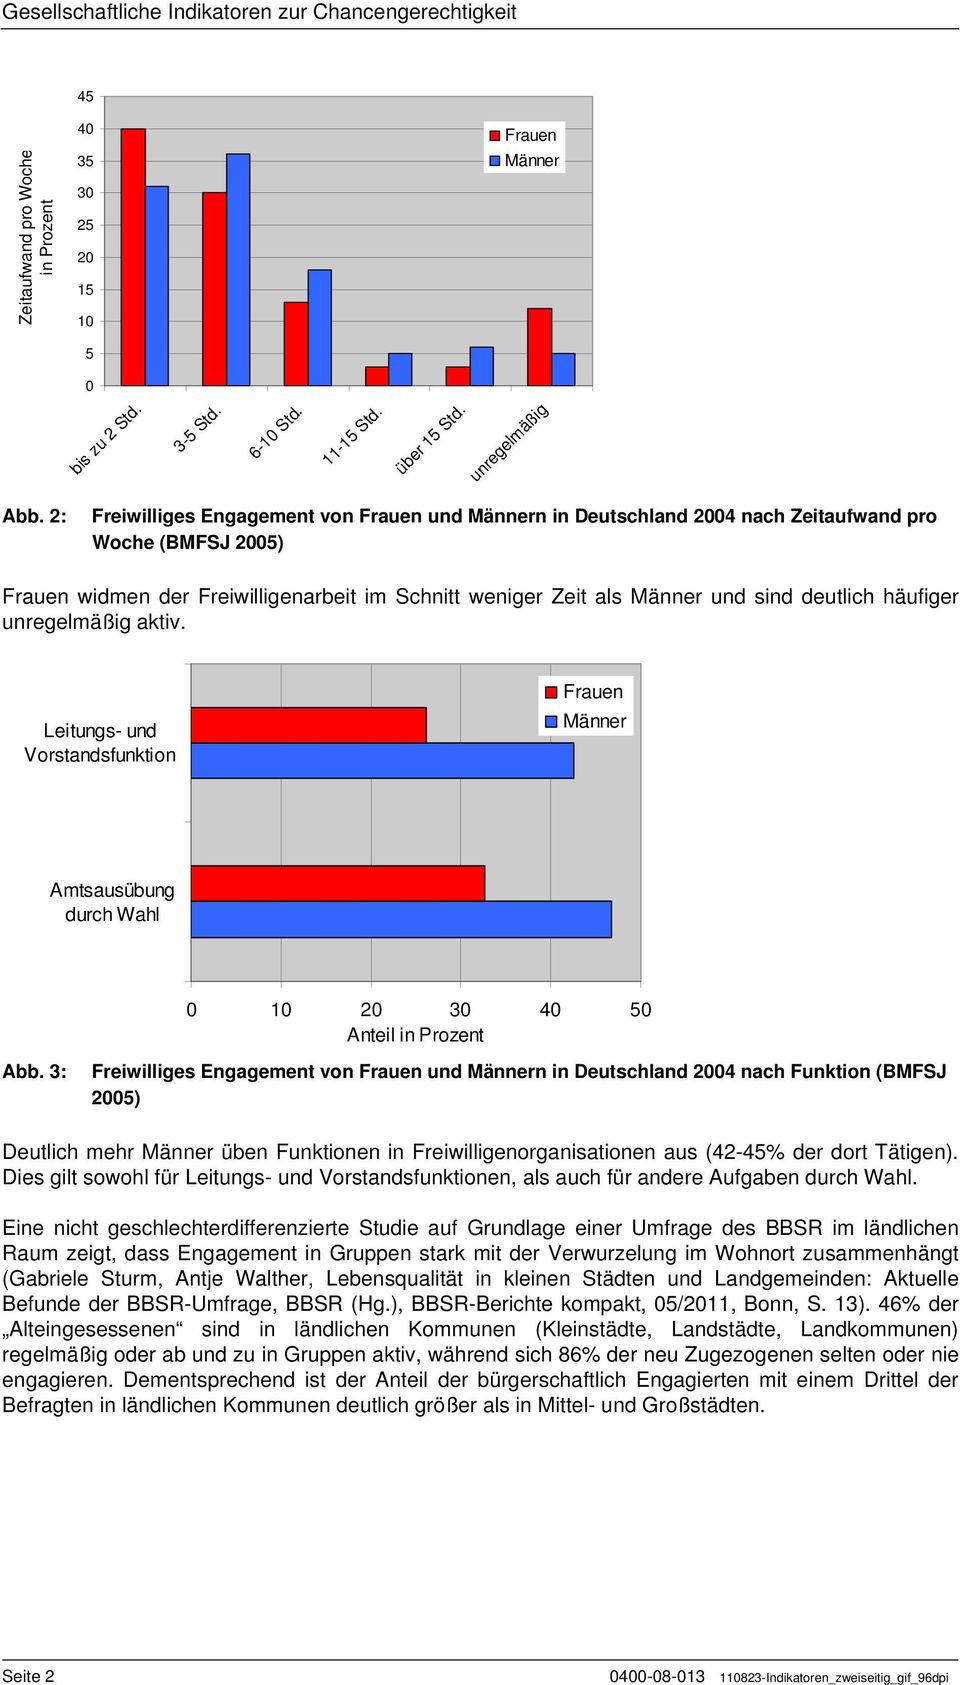 2: Freiwilliges Engagement von Frauen und Männern in Deutschland 2004 nach Zeitaufwand pro Woche (BMFSJ 2005) Frauen widmen der Freiwilligenarbeit im Schnitt weniger Zeit als Männer und sind deutlich